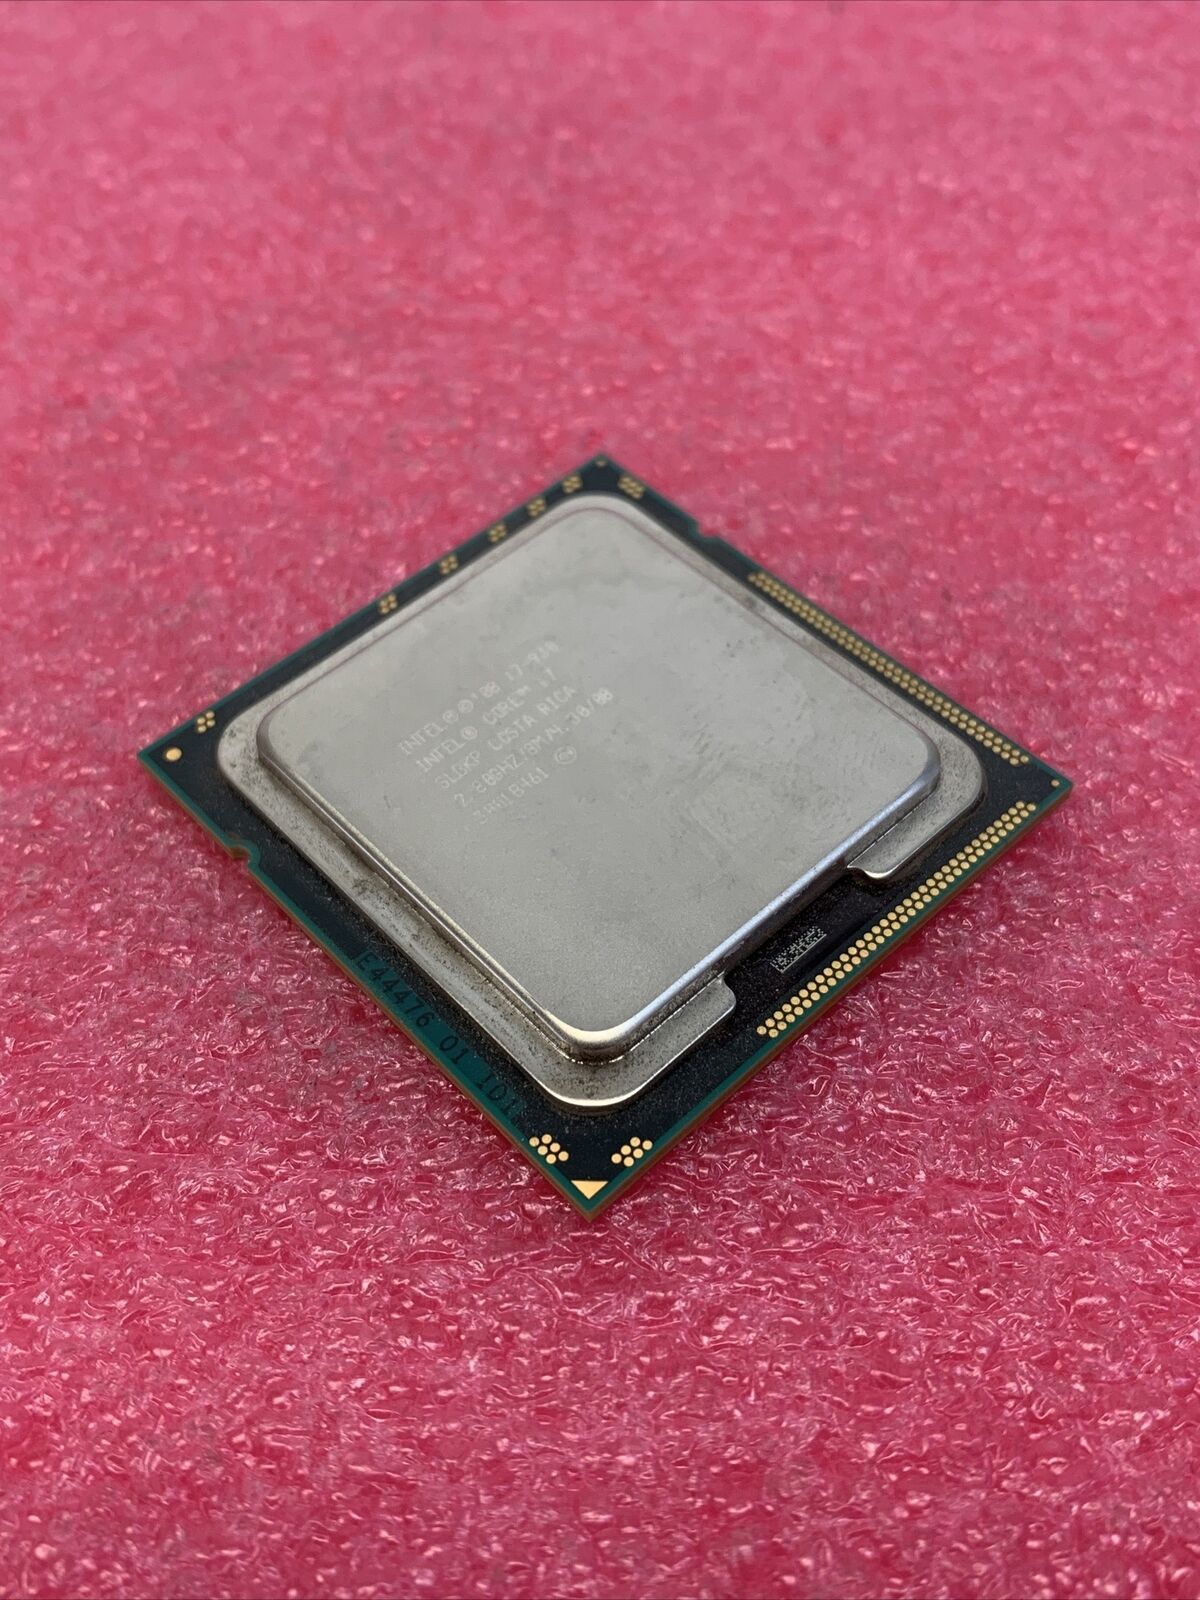 Intel Core i7-930 2.8GHz SLBKP Processor